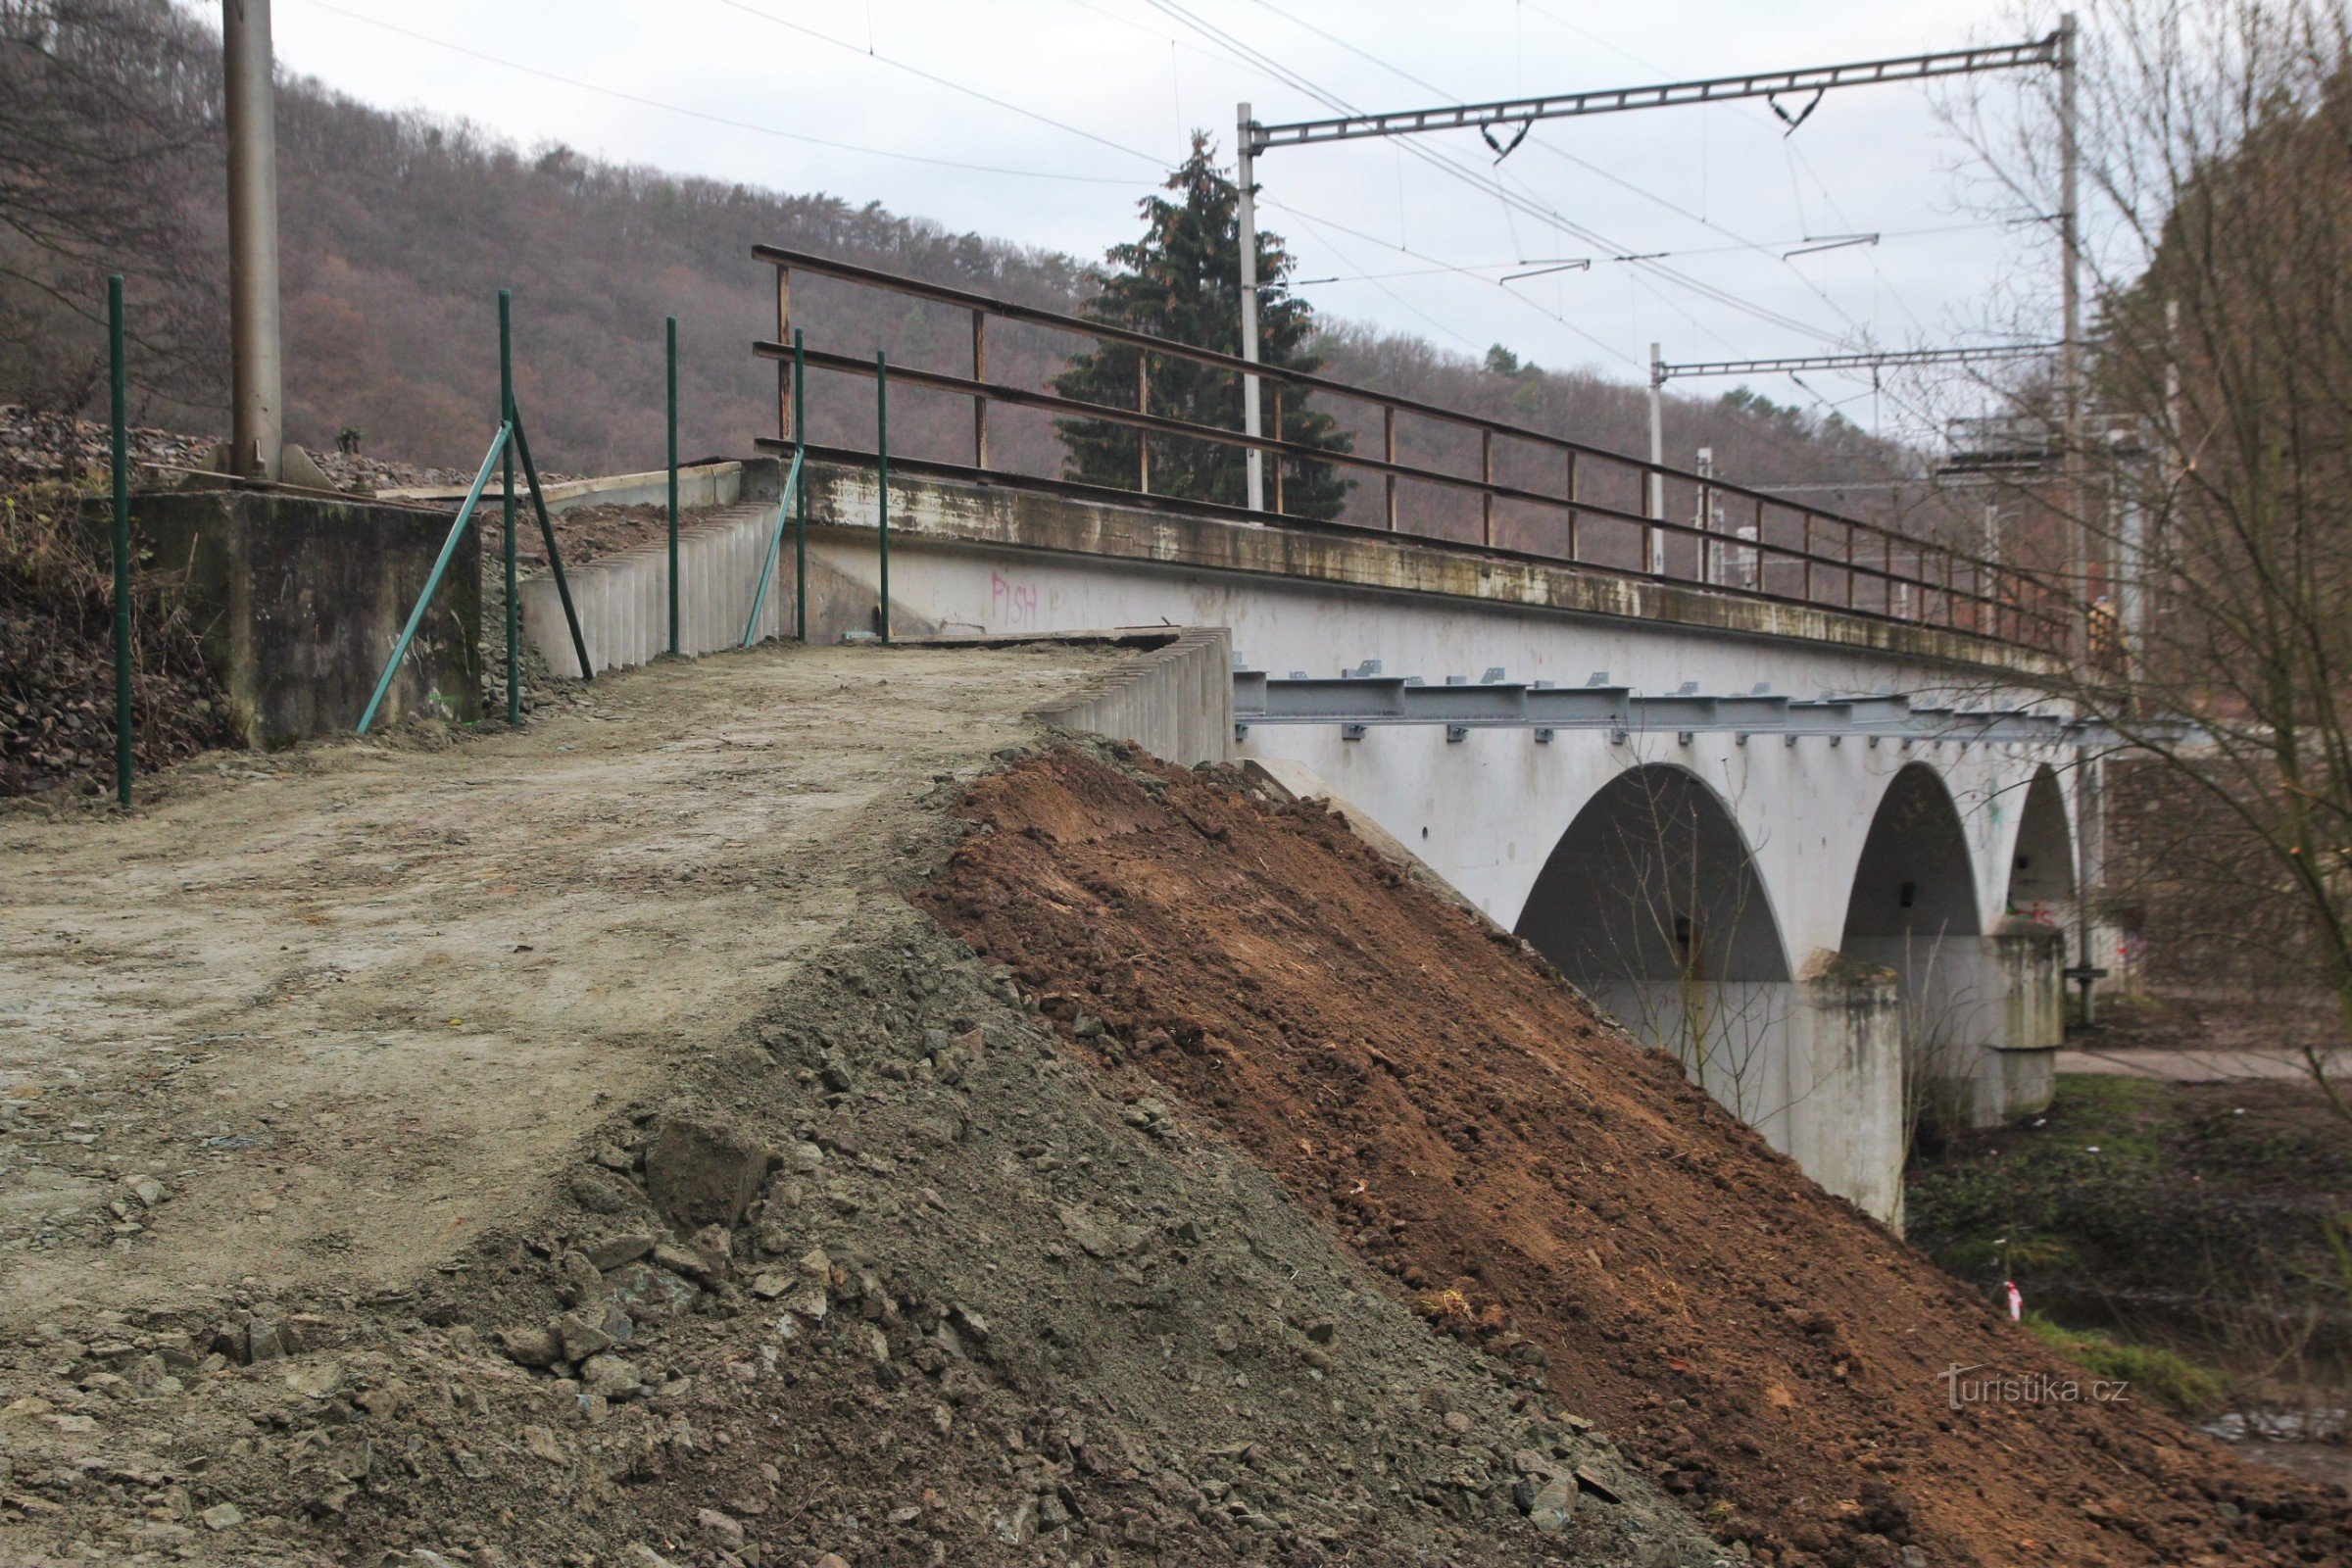 Pješački most postupno ugrađen u zid željezničkog mosta